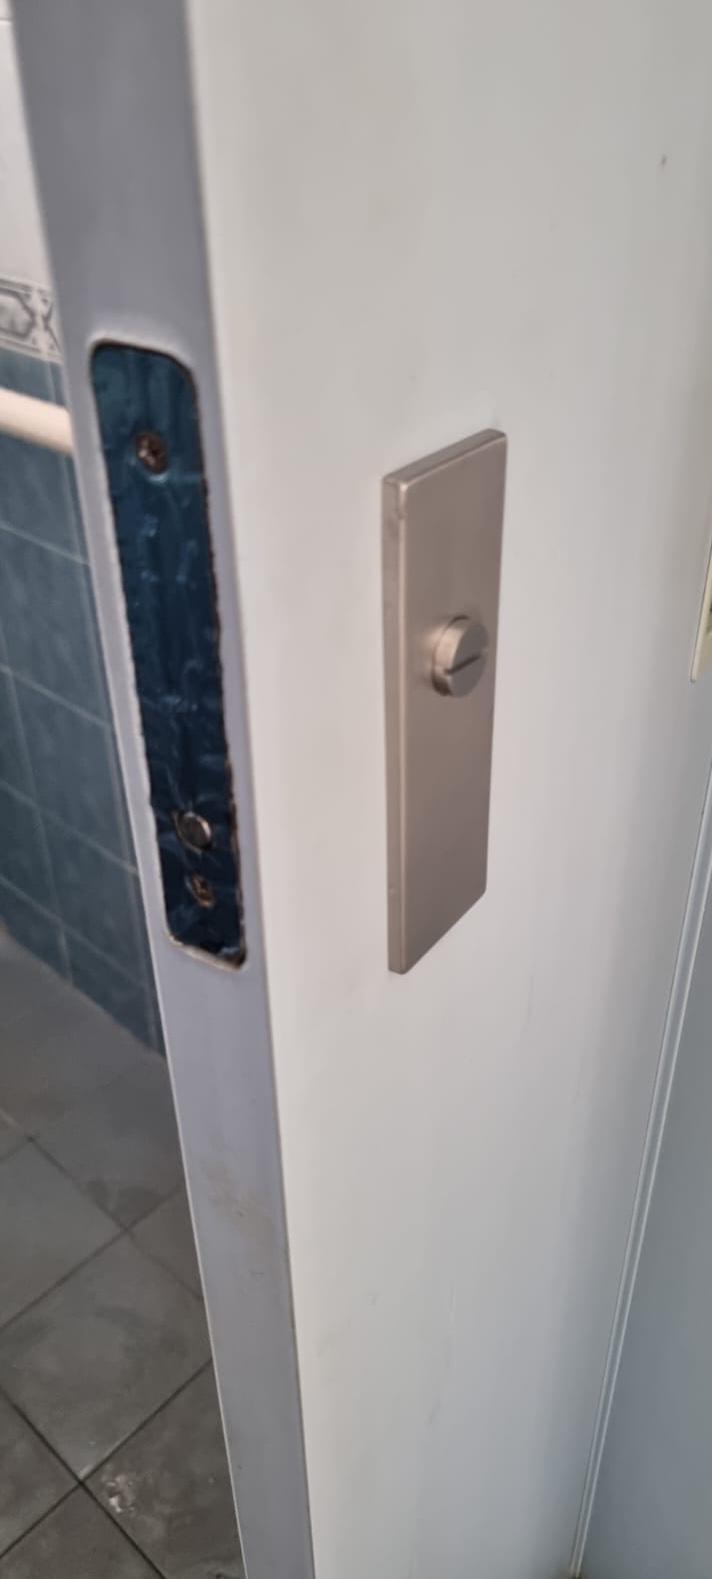 Toilet Door Handle Replacement